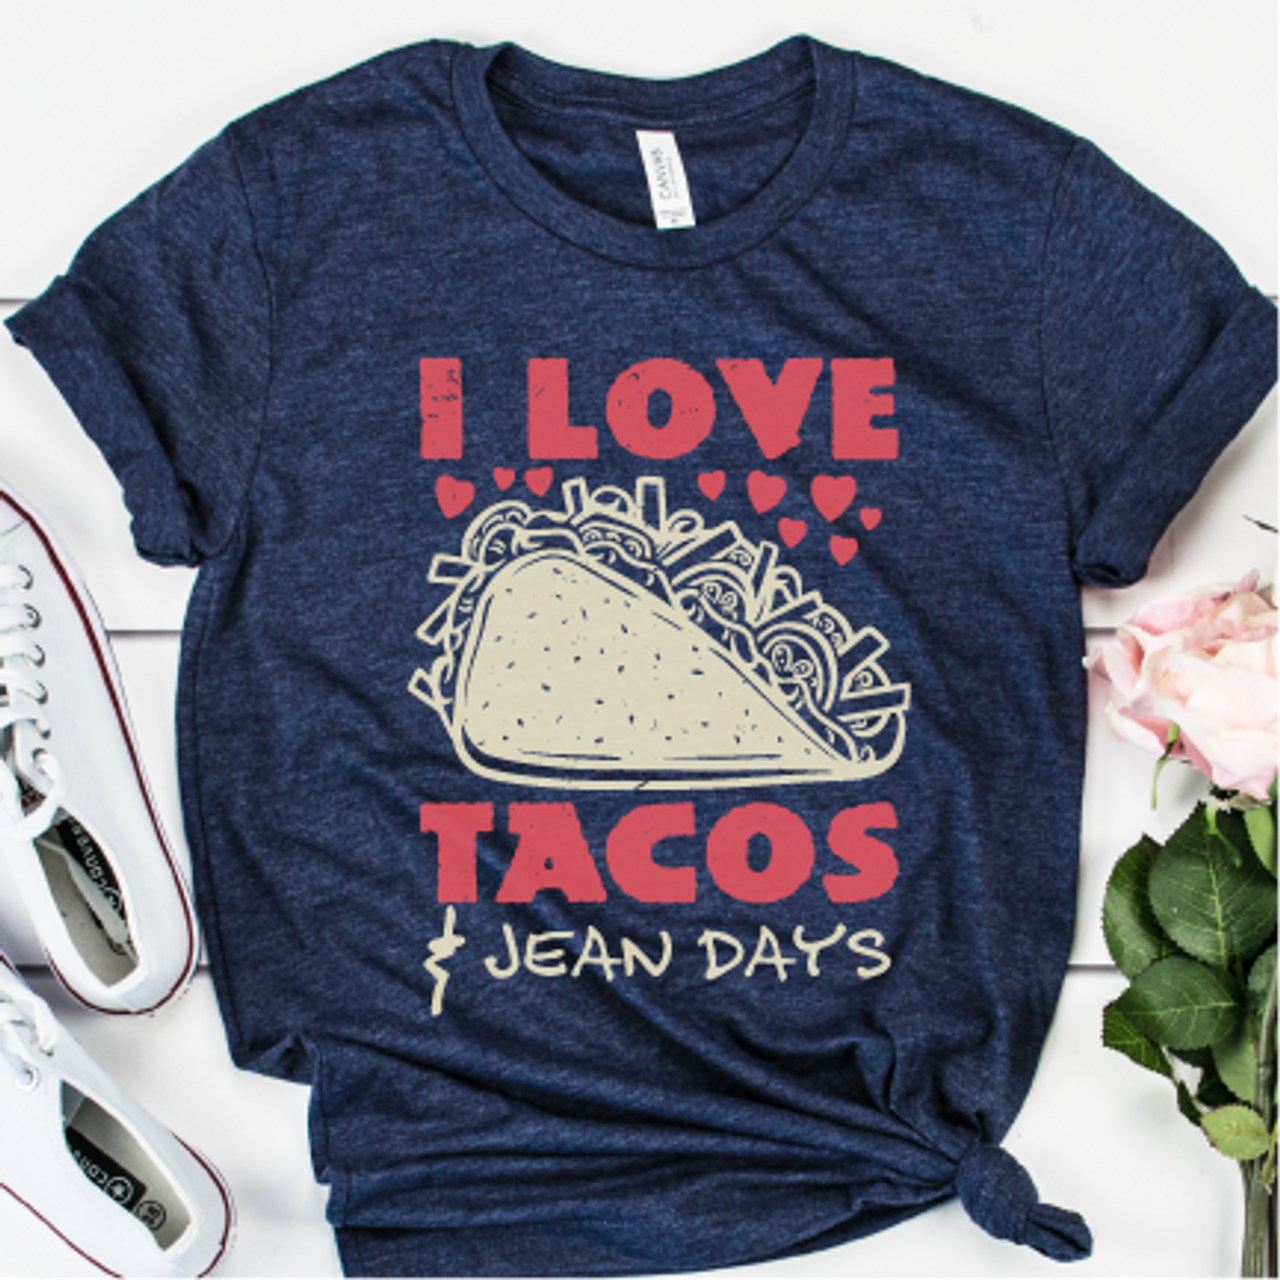 "I Love Tacos & Jean Days"